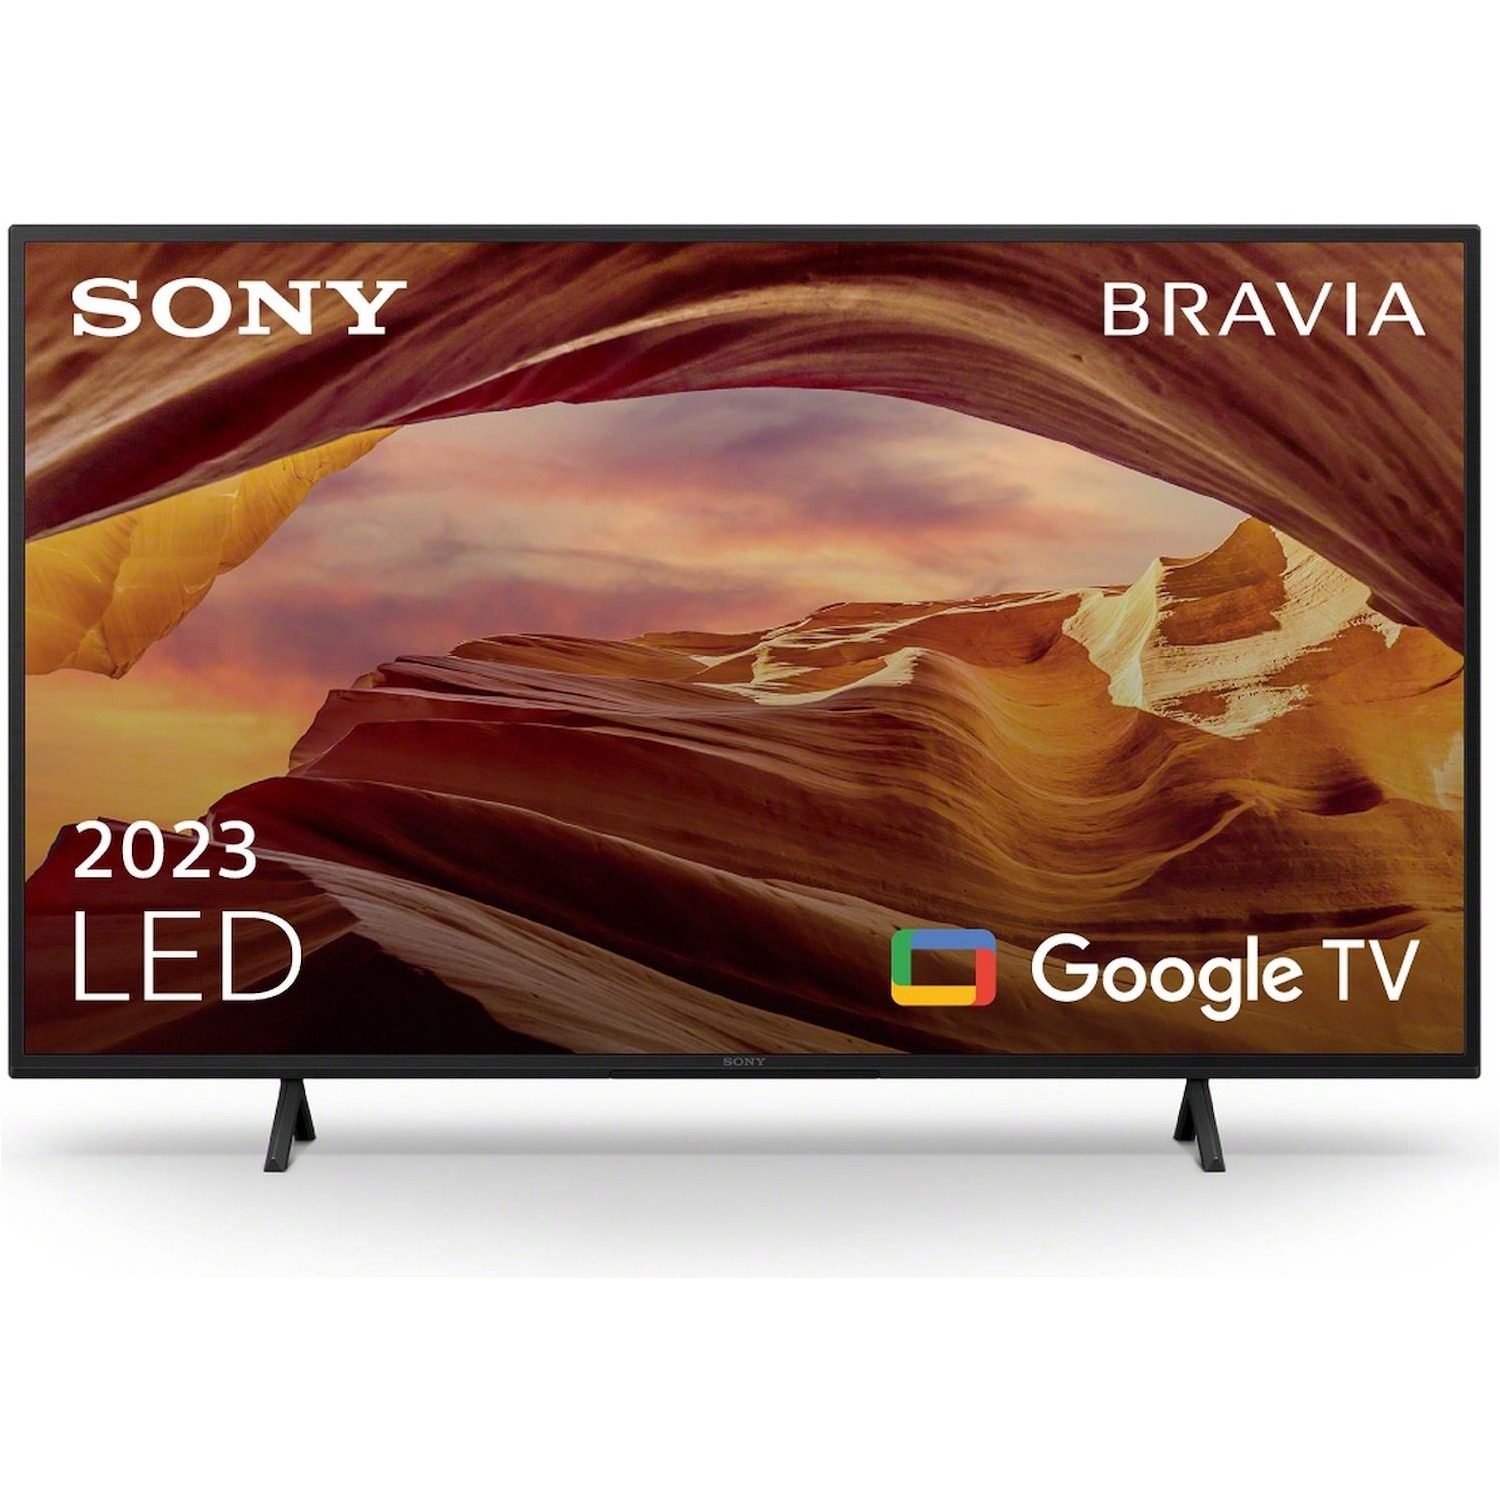 Immagine per TV LED Smart 4K UHD Sony 43X75W da DIMOStore